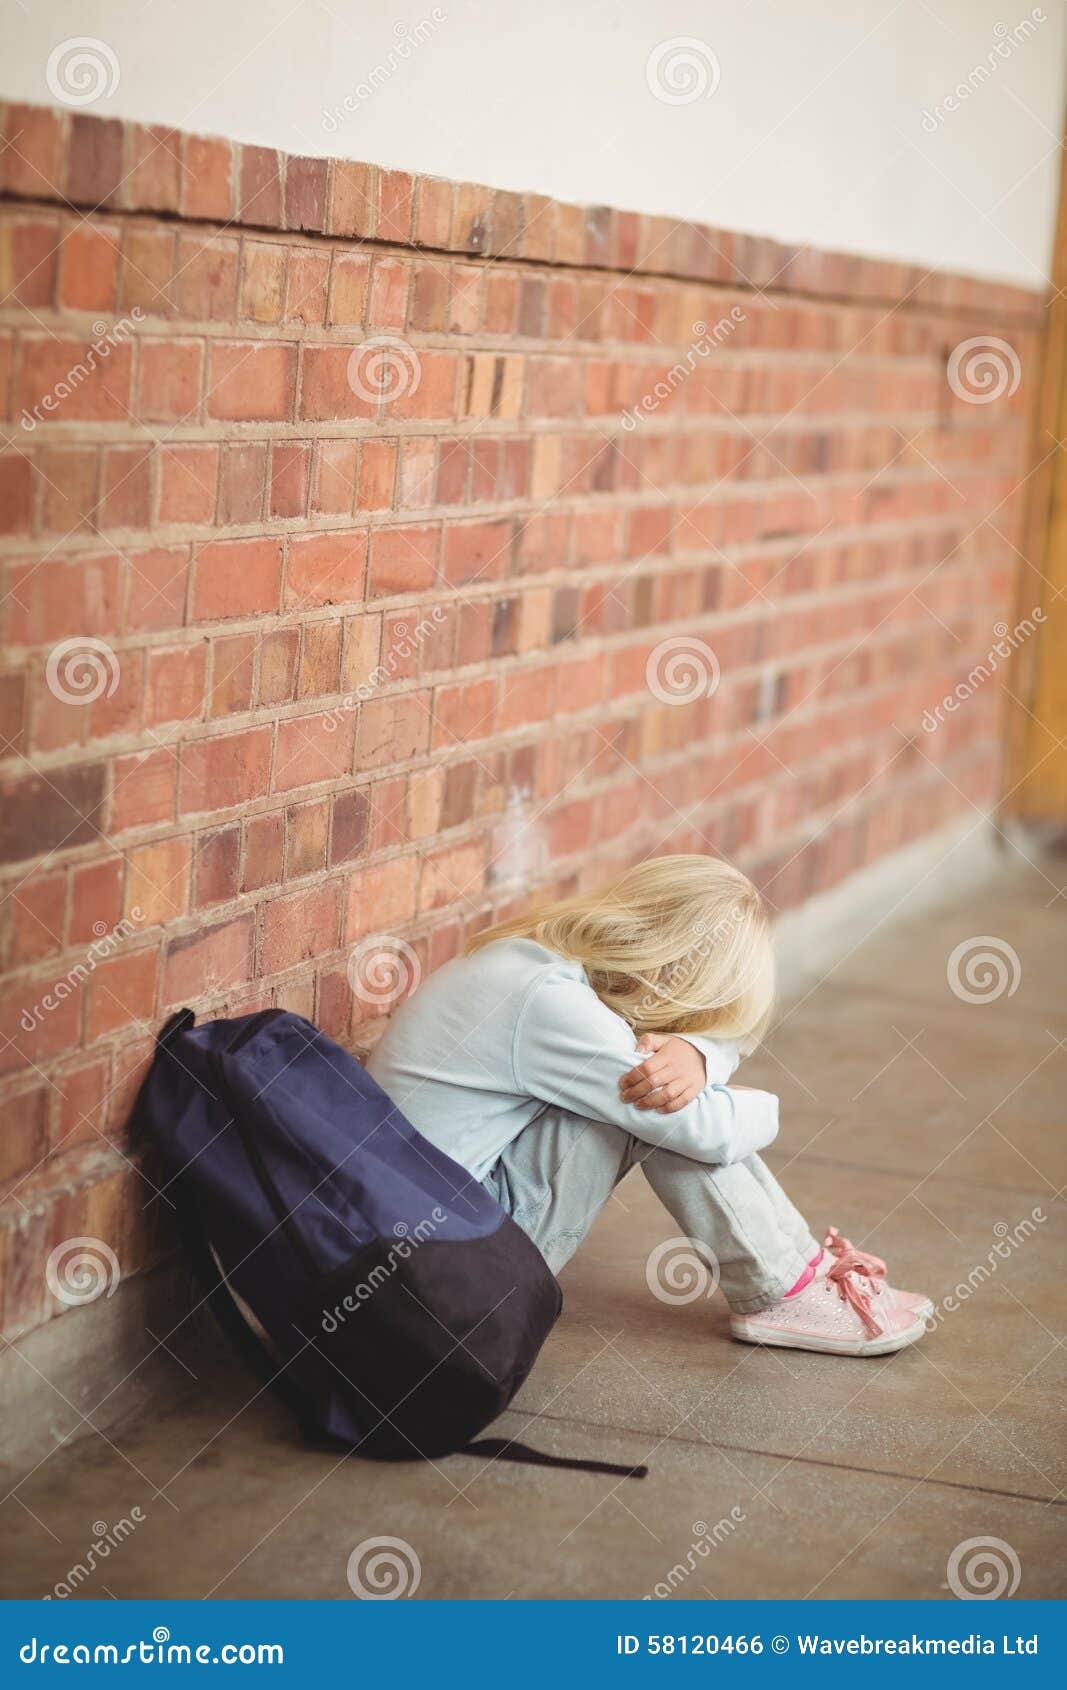 Sad Pupil Sitting Alone on Ground Stock Photo - Image of crying ...